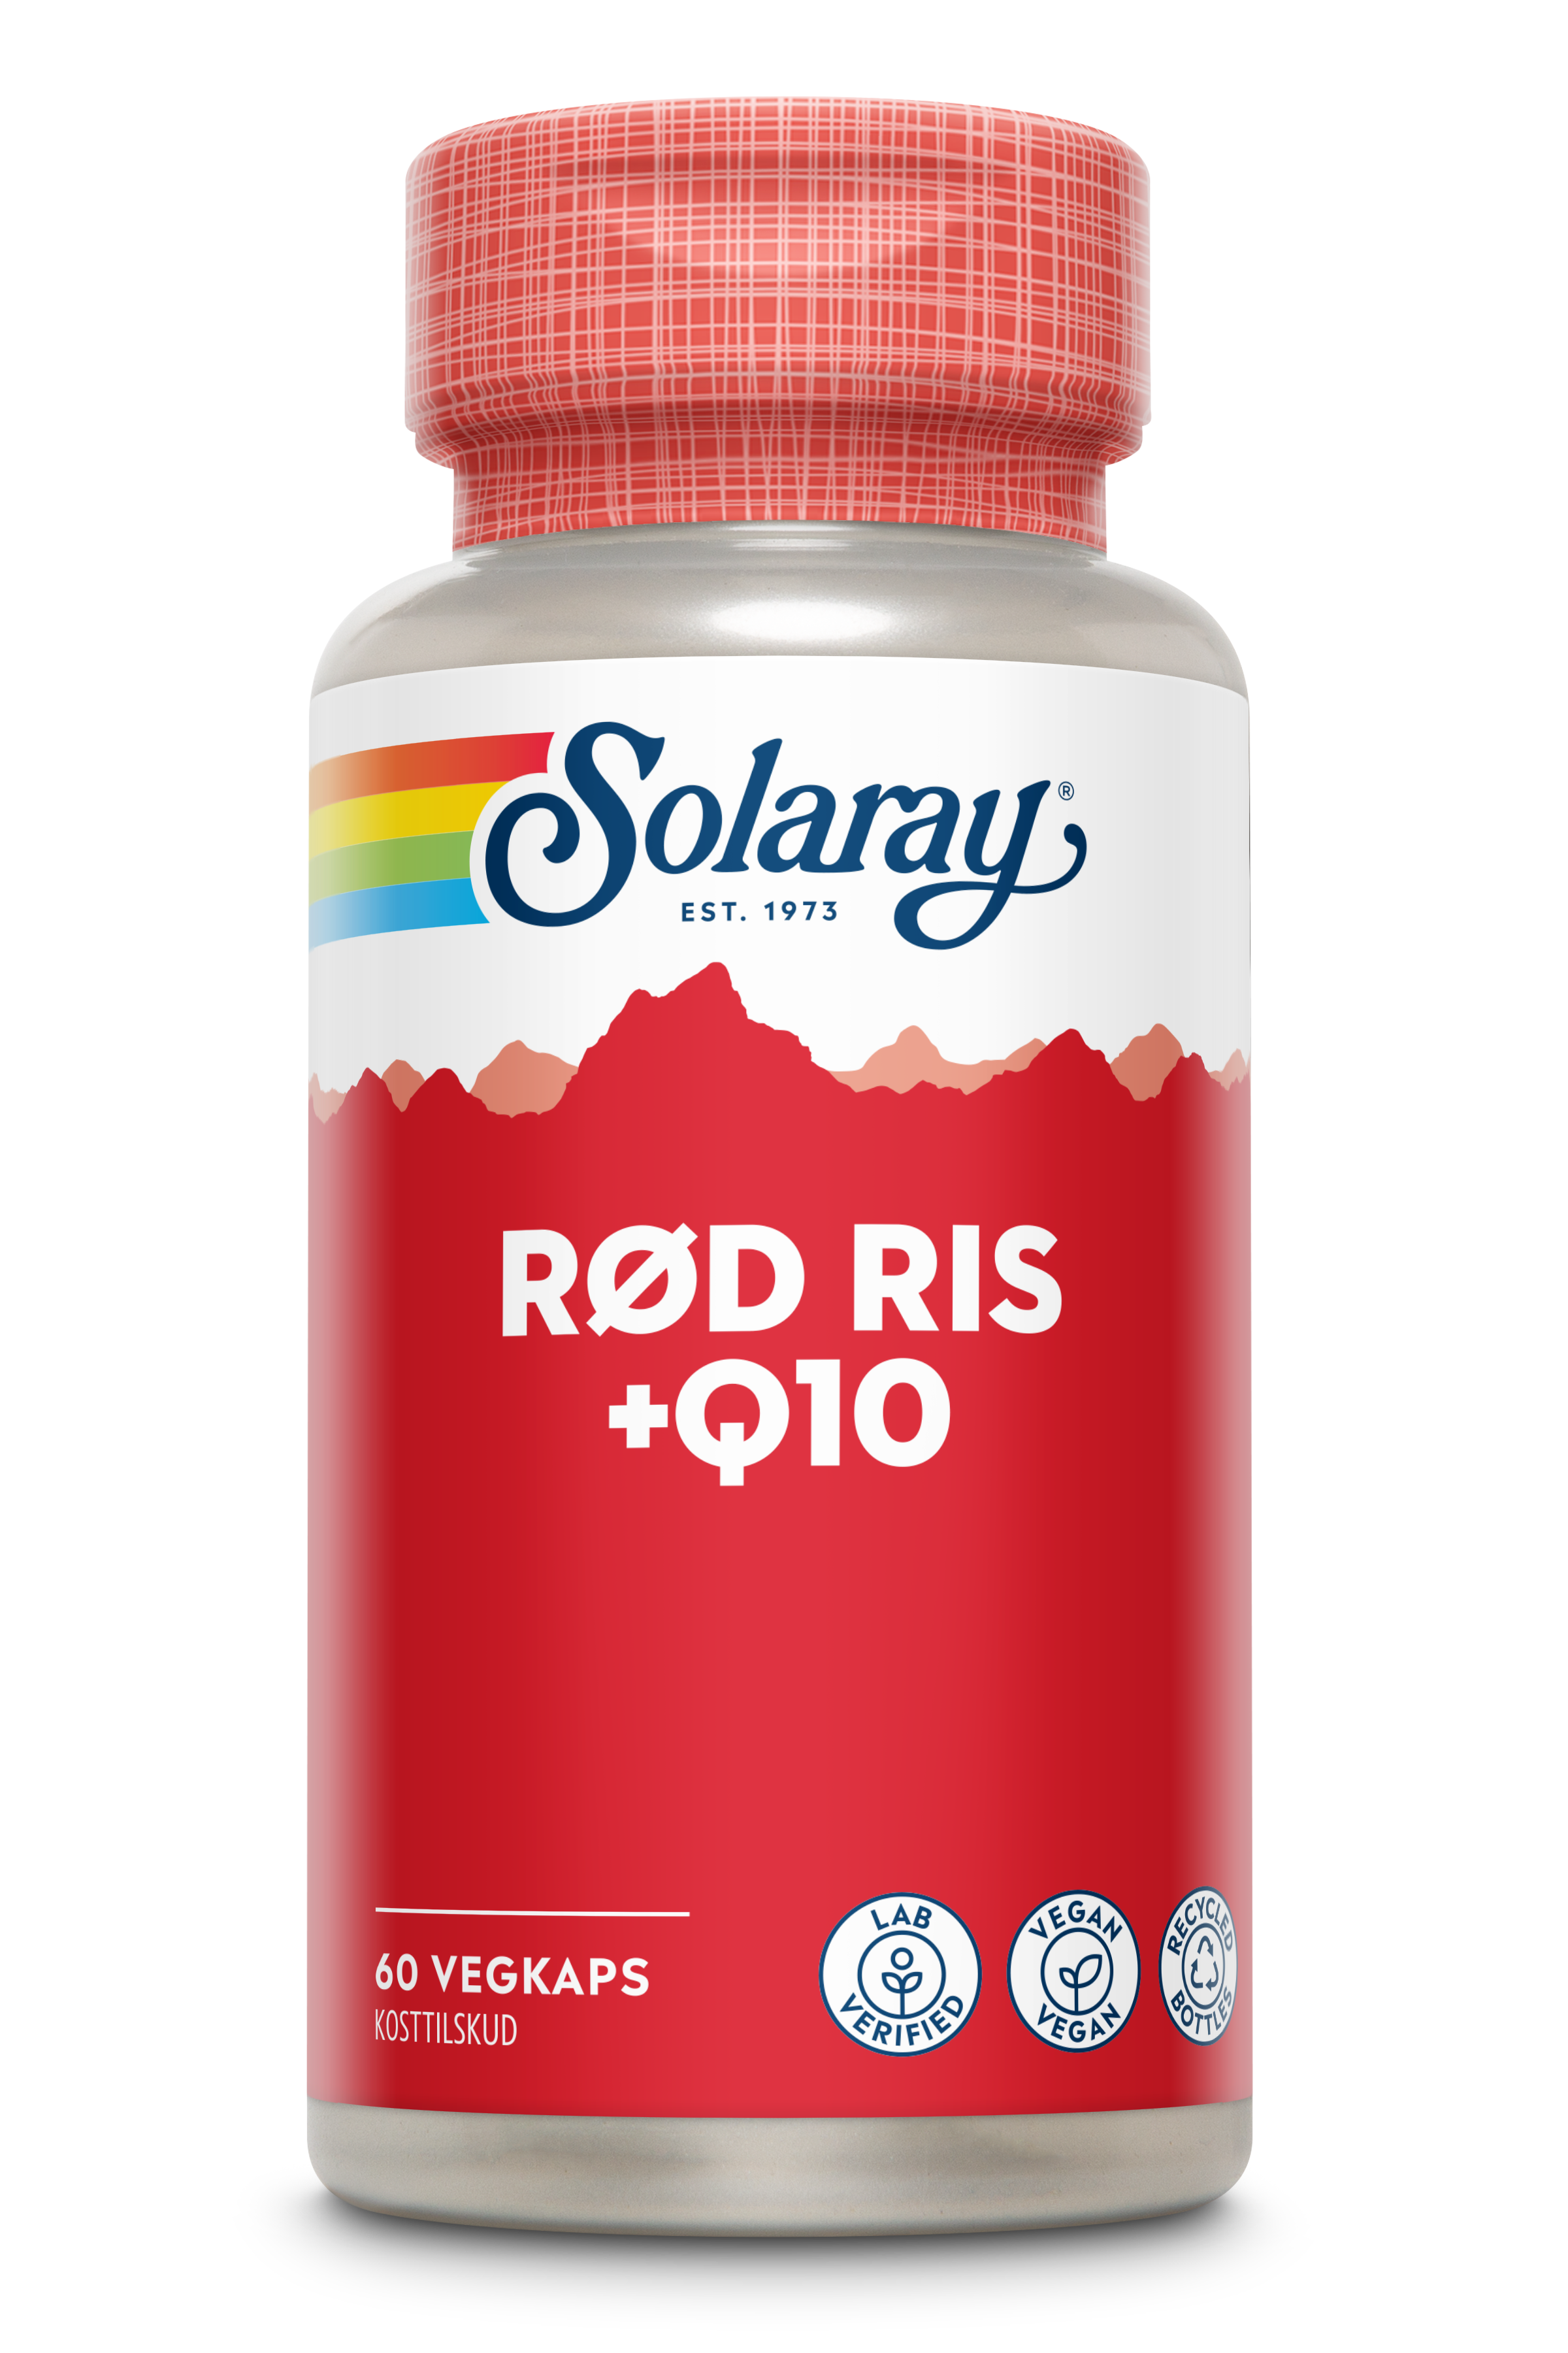 Rød Ris+ Q10 produktfoto